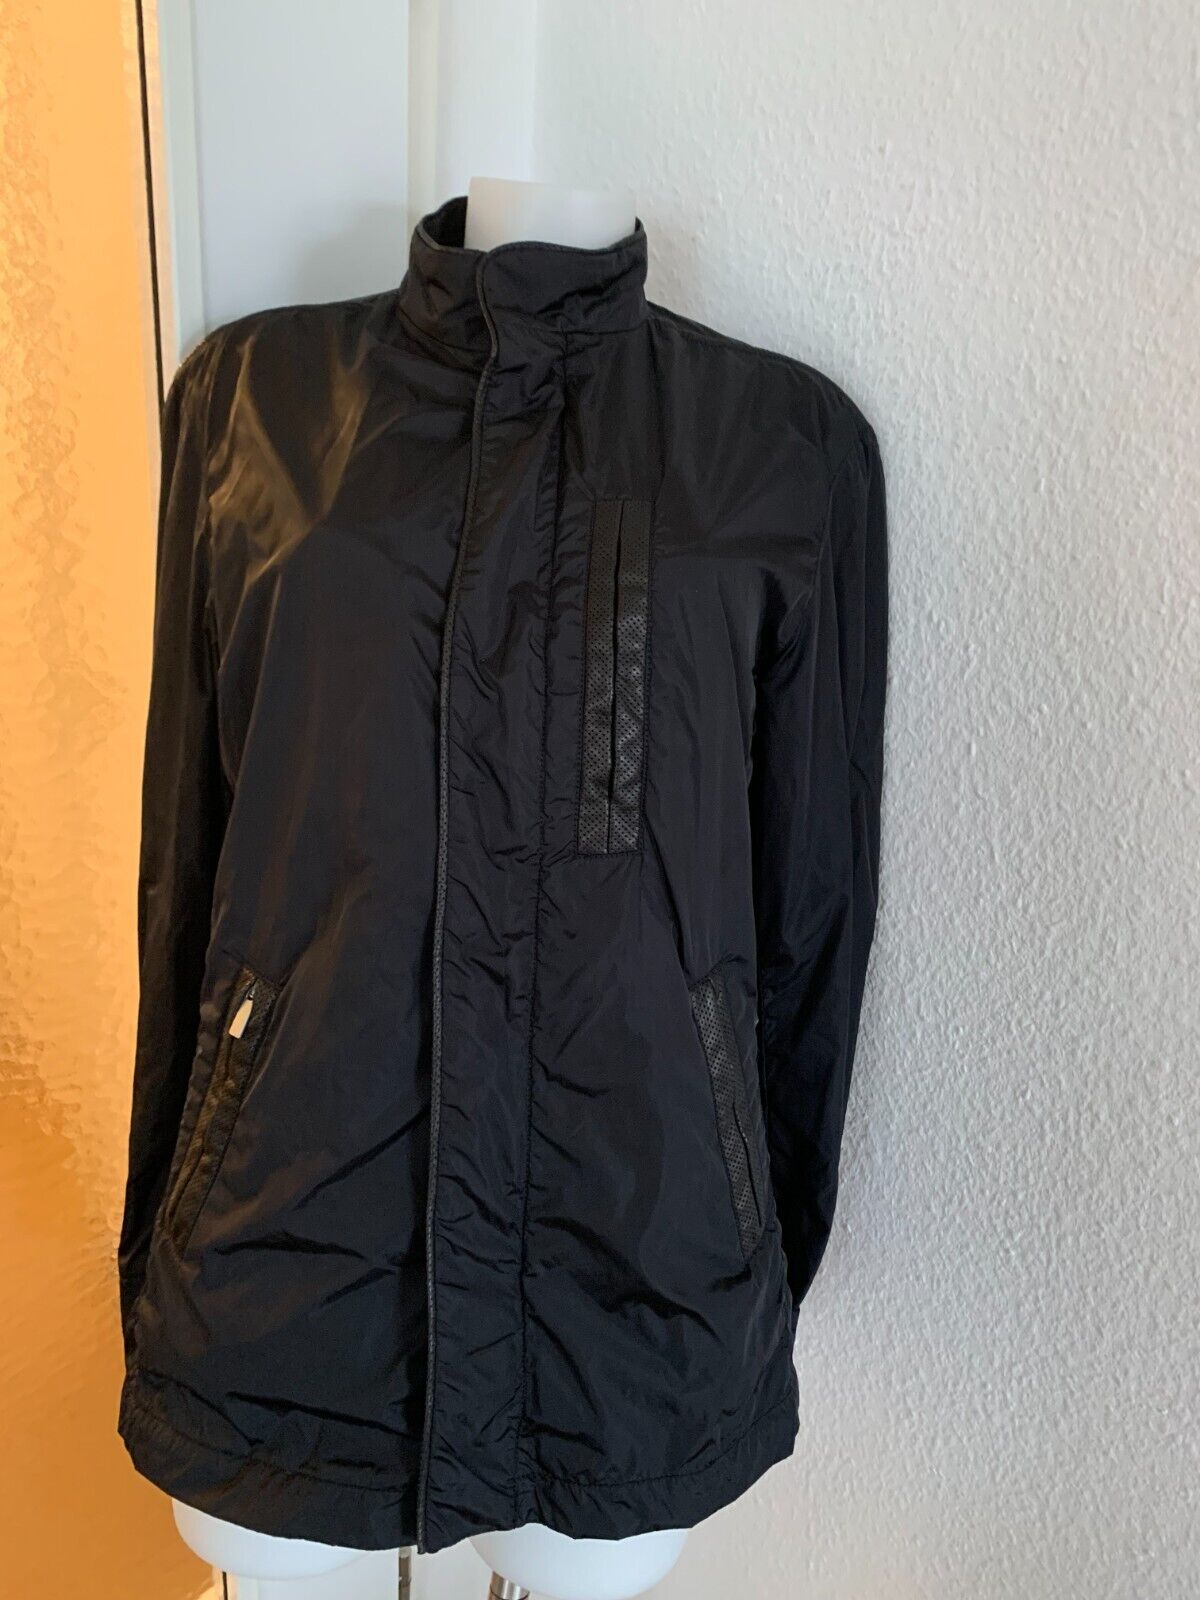 Leichte Damen Jacke von PORSCHE DESIGN, schwarz, ital.Gr. 46, dt. Gr. 40